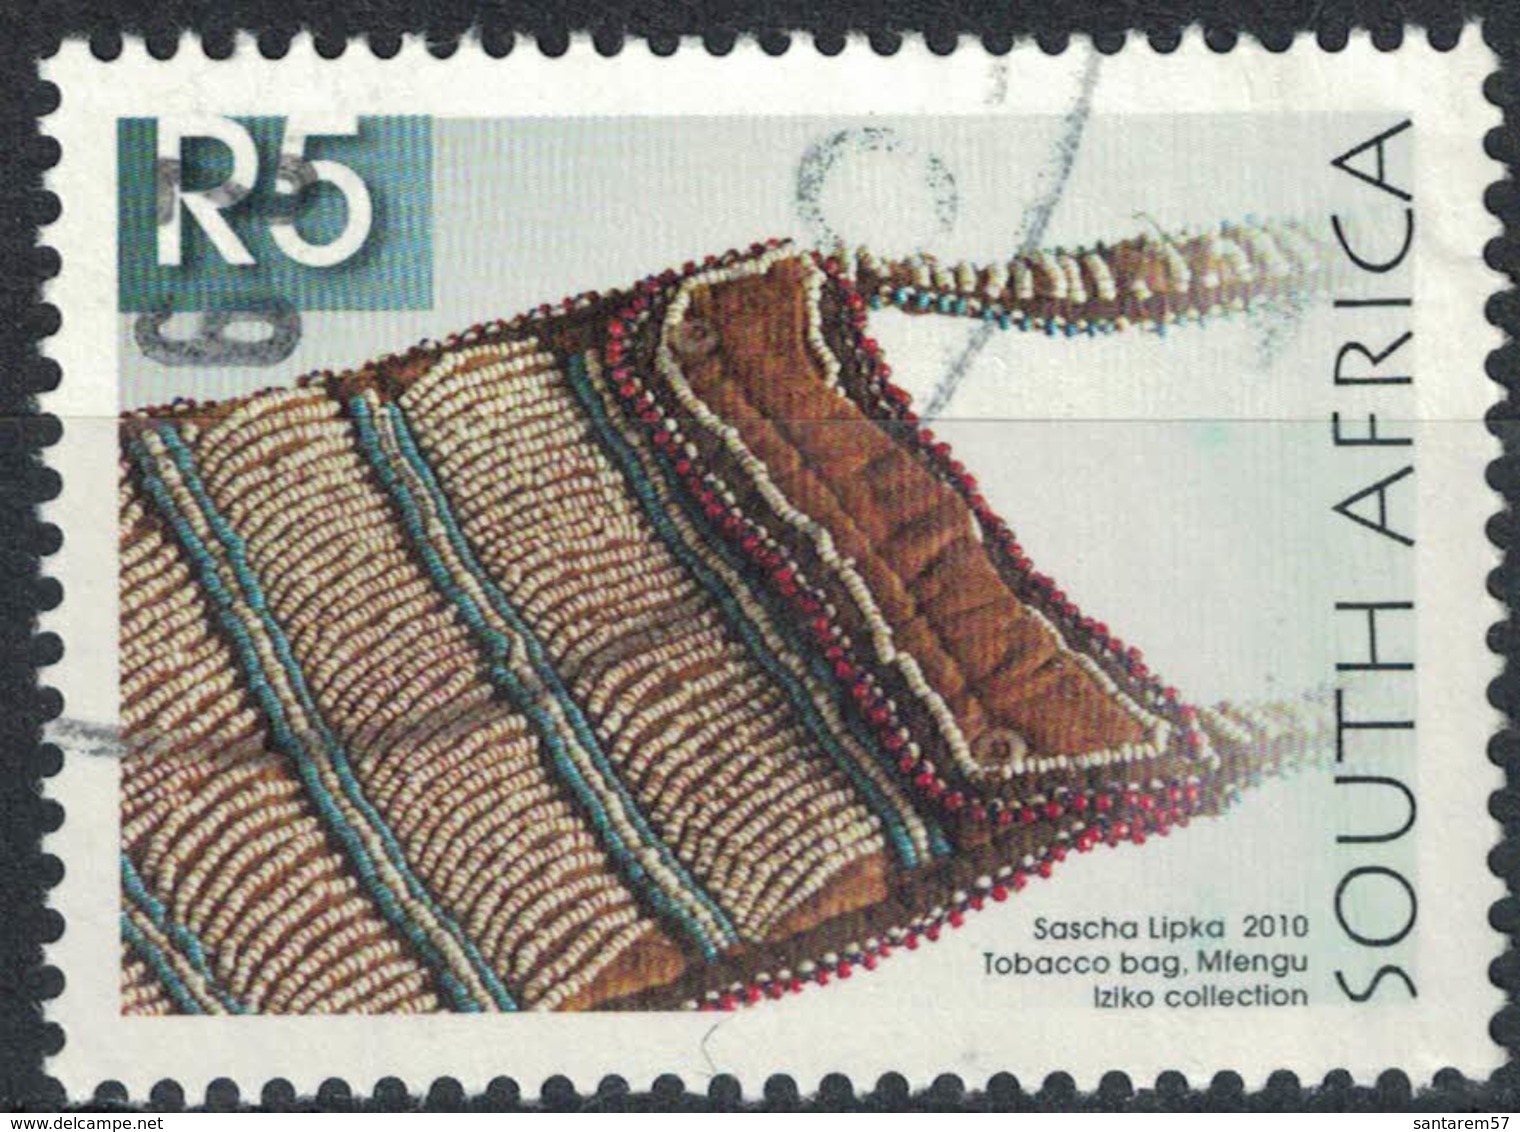 Afrique Du Sud 2010 Oblitération Ronde Used Stamp Sascha Lipka Sac à Tabac Tobacco Bag - Gebraucht